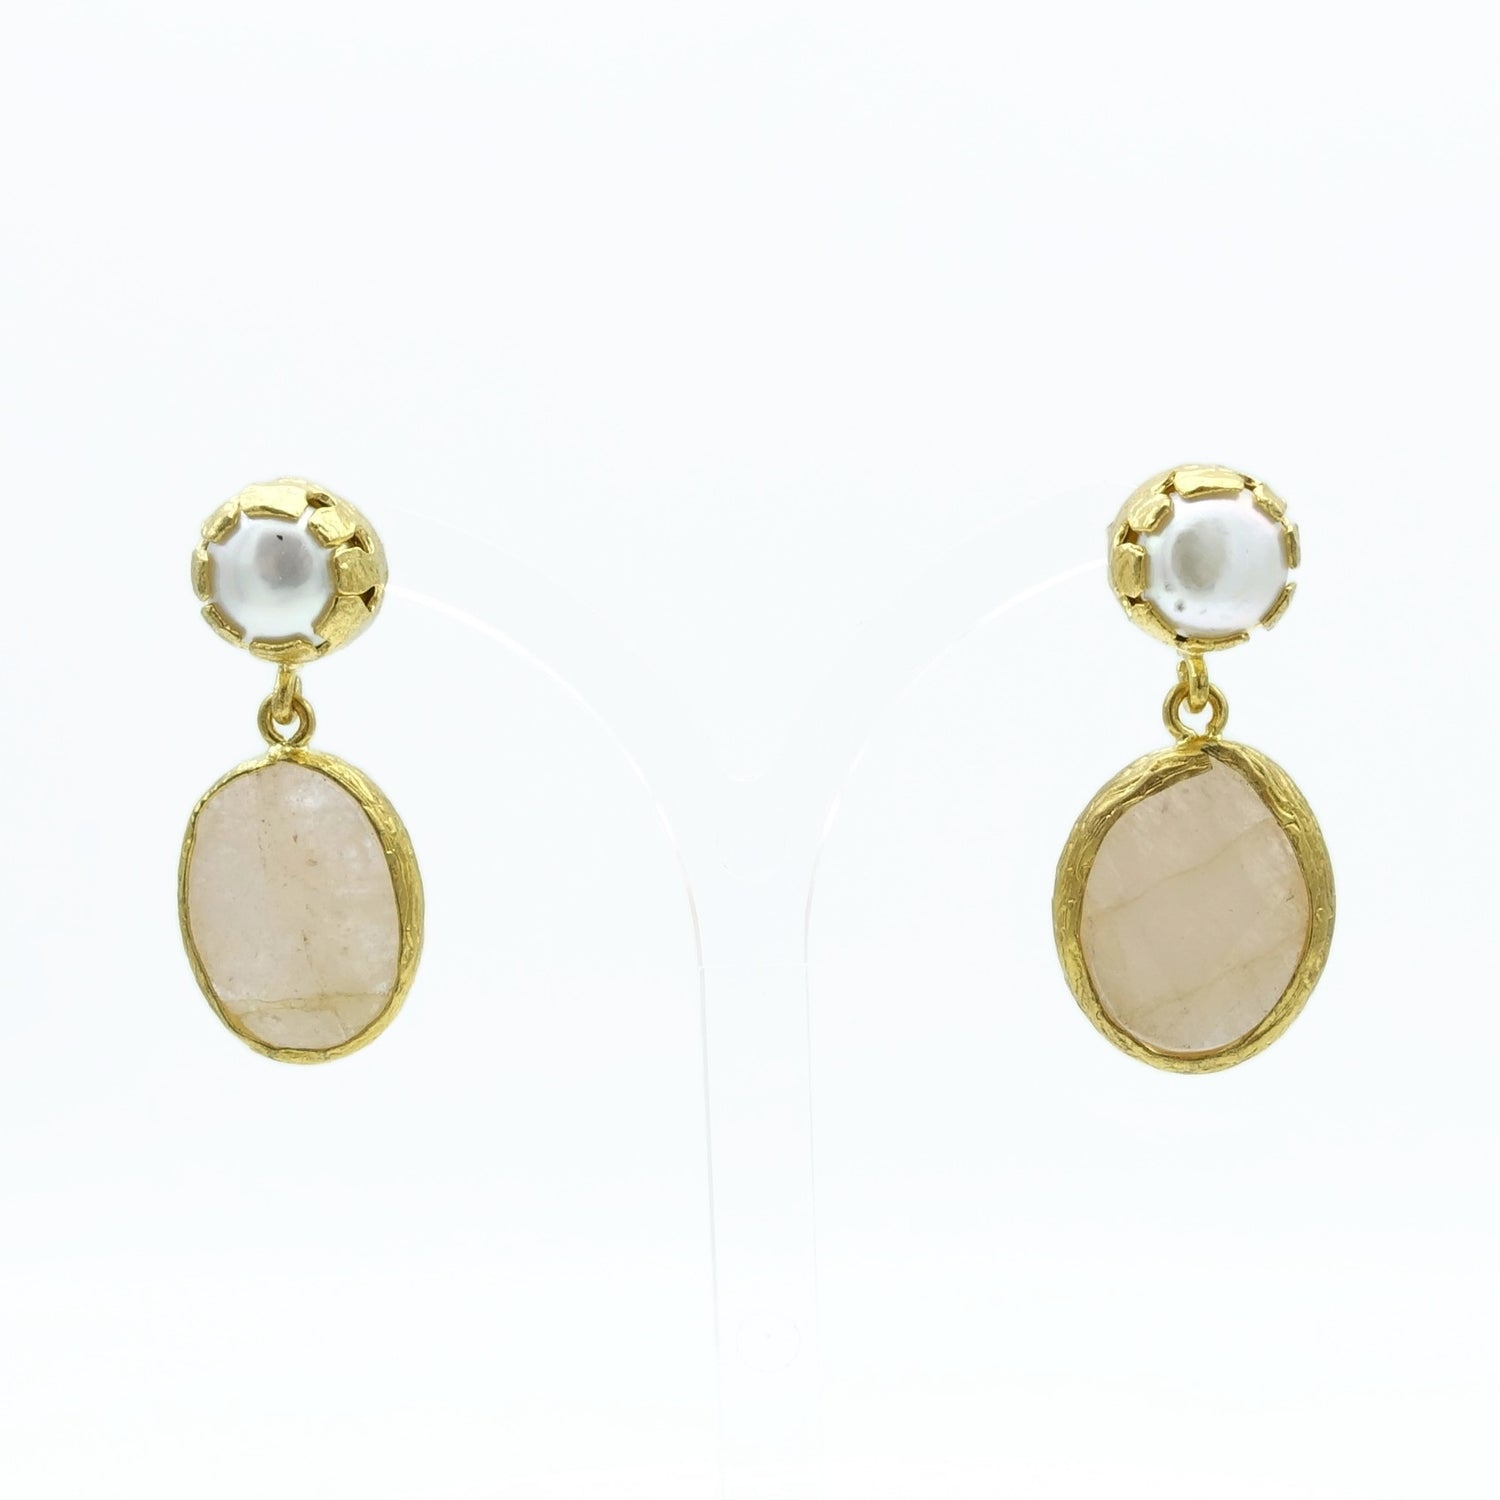 Aylas Pearl Rose quartz earrings 21ct Gold plated semi precious gemstone - Handmade